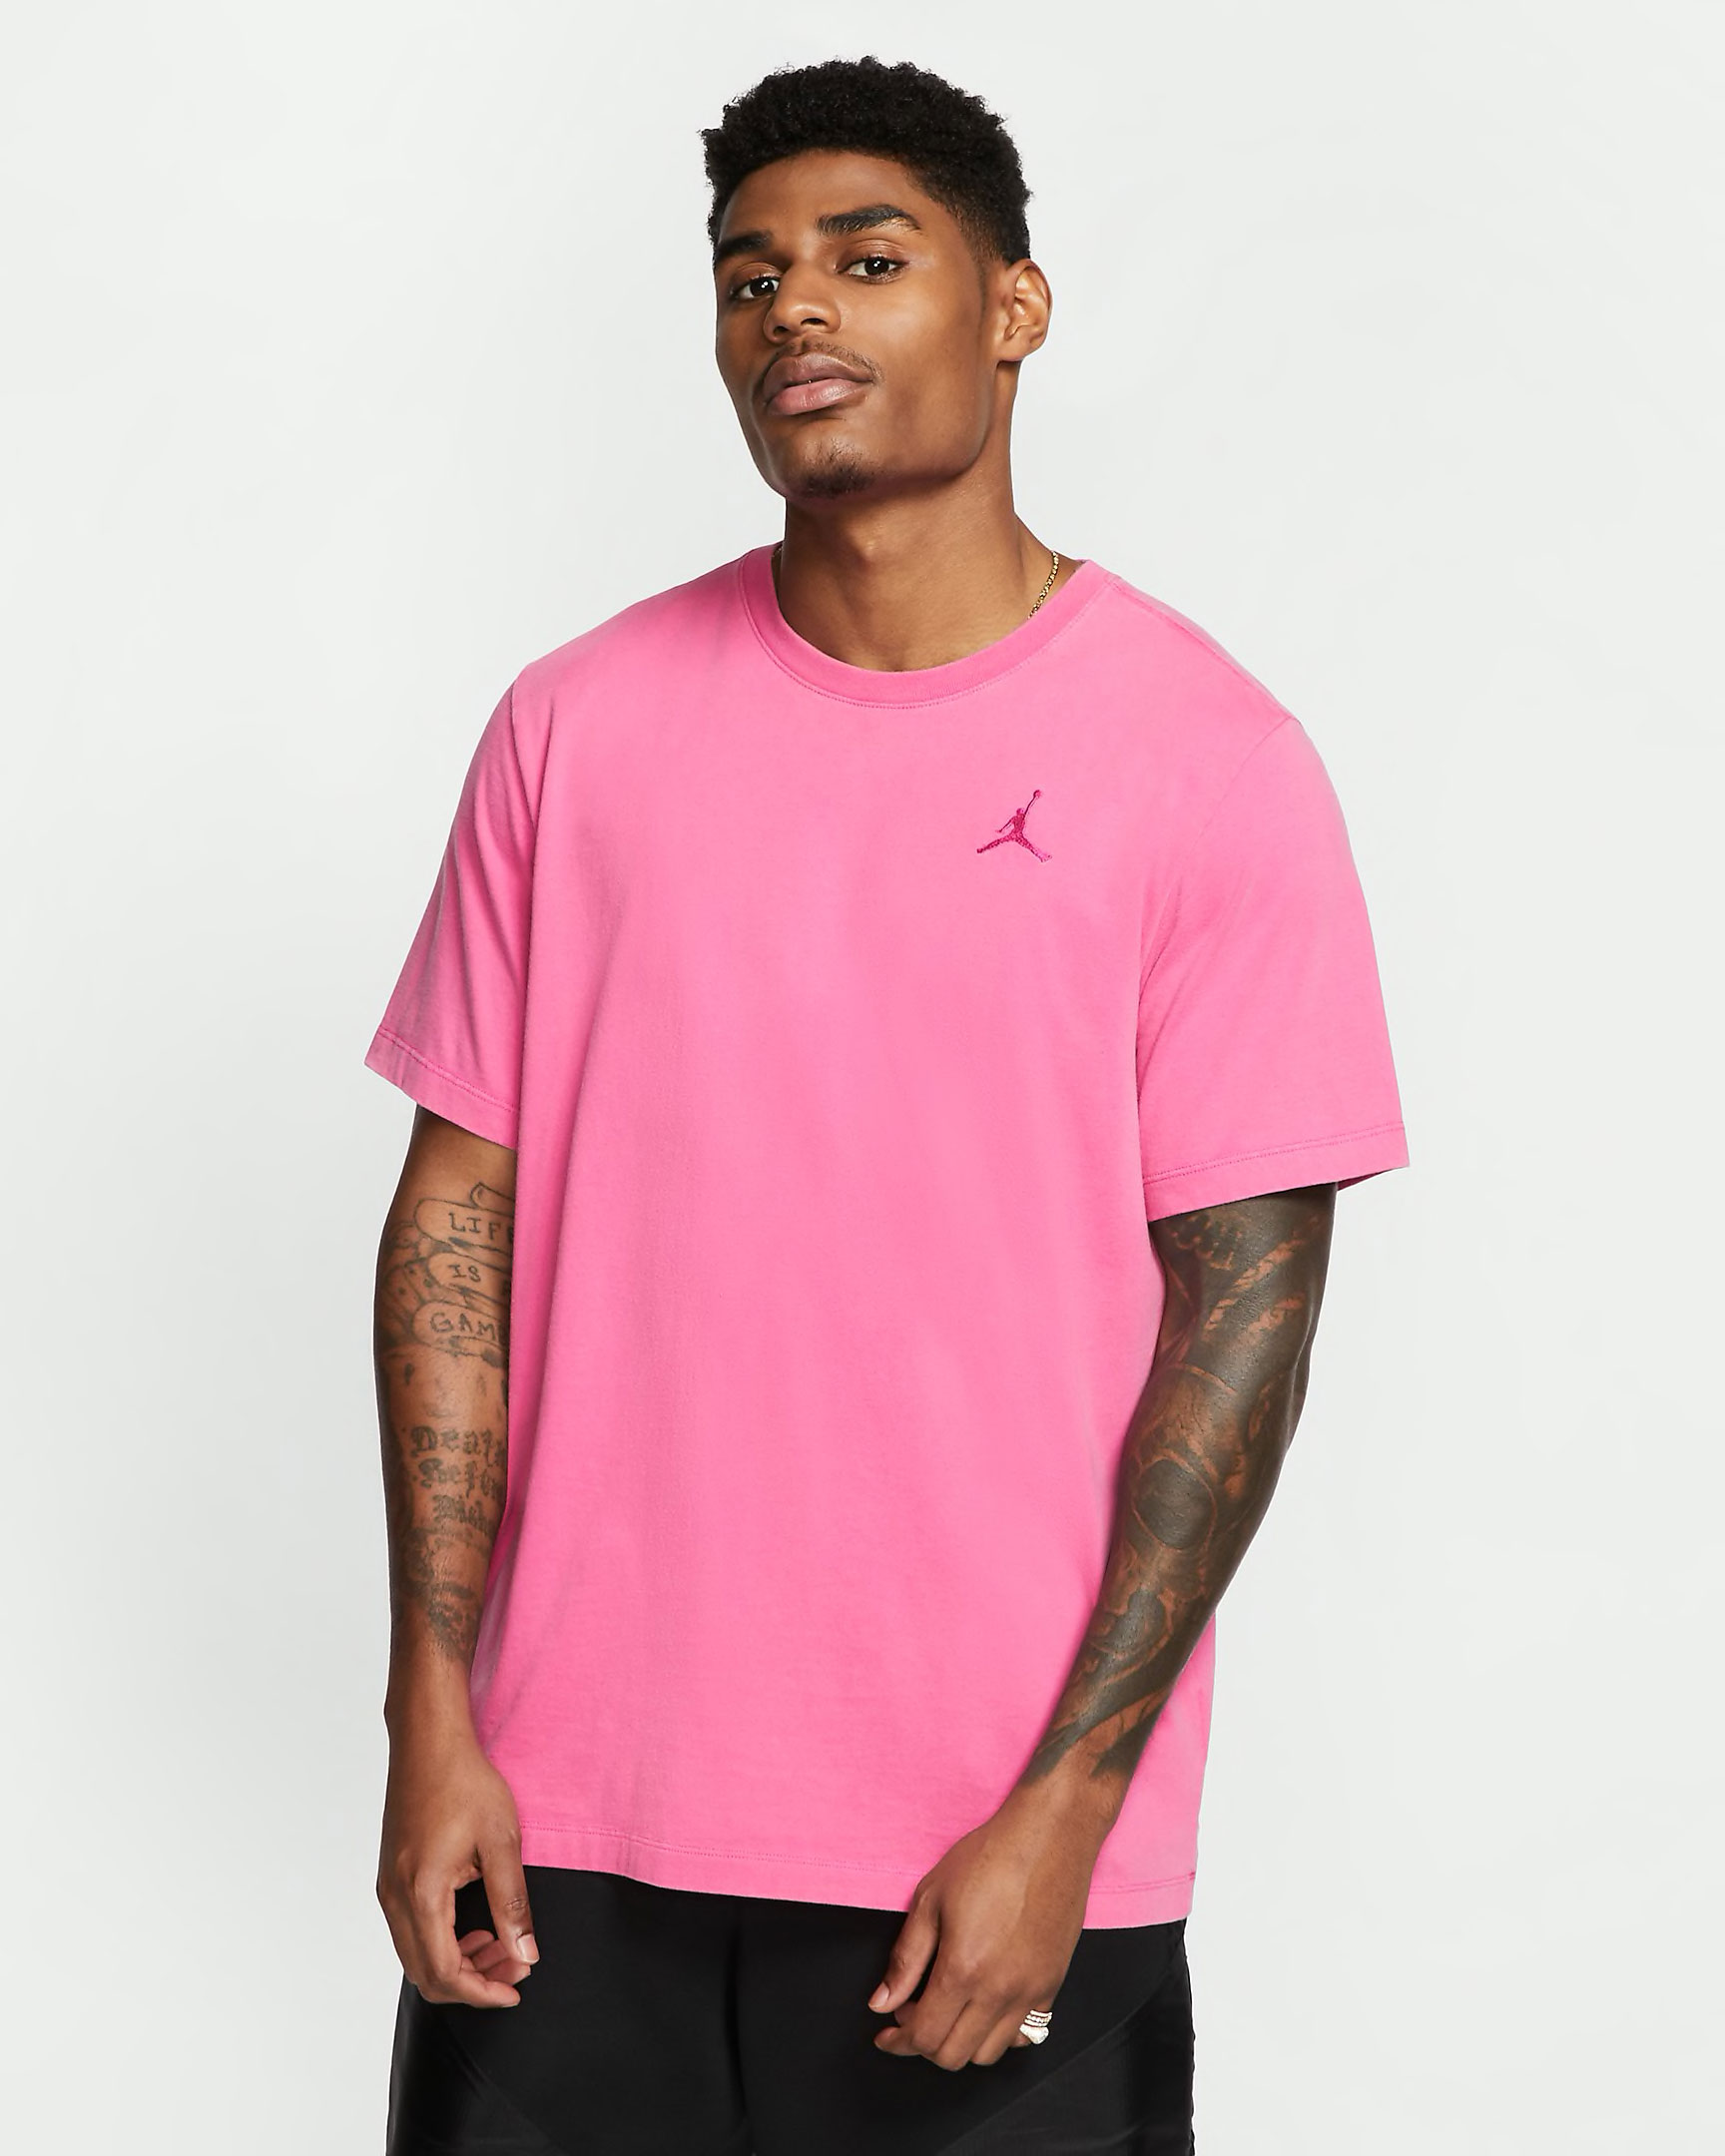 jordan-7-hare-2-pink-shirt